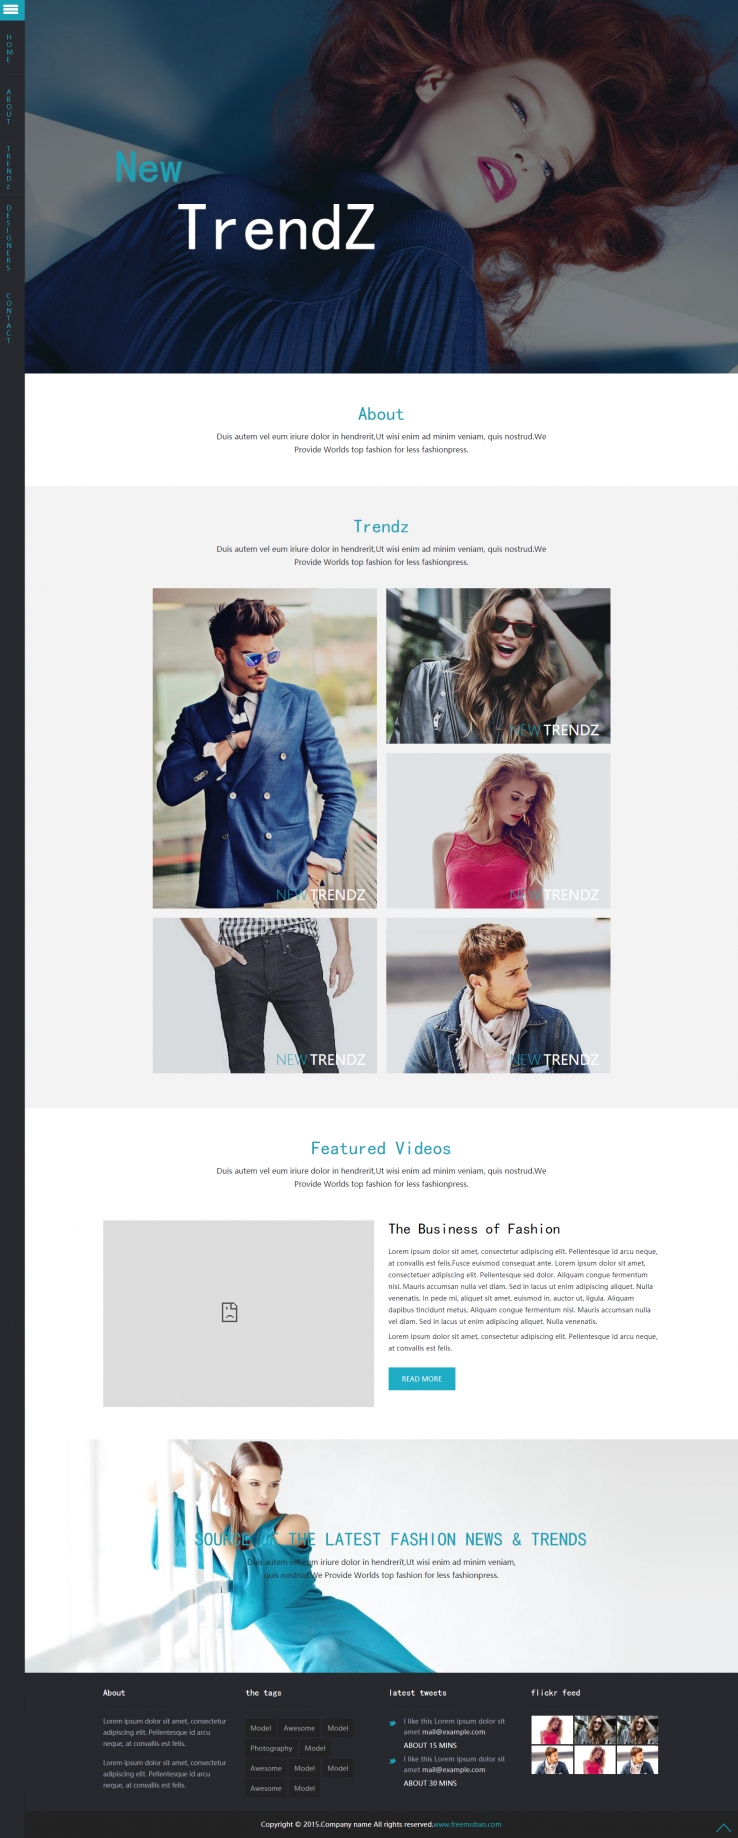 黑色简洁风格的模特流行服饰企业网站模板